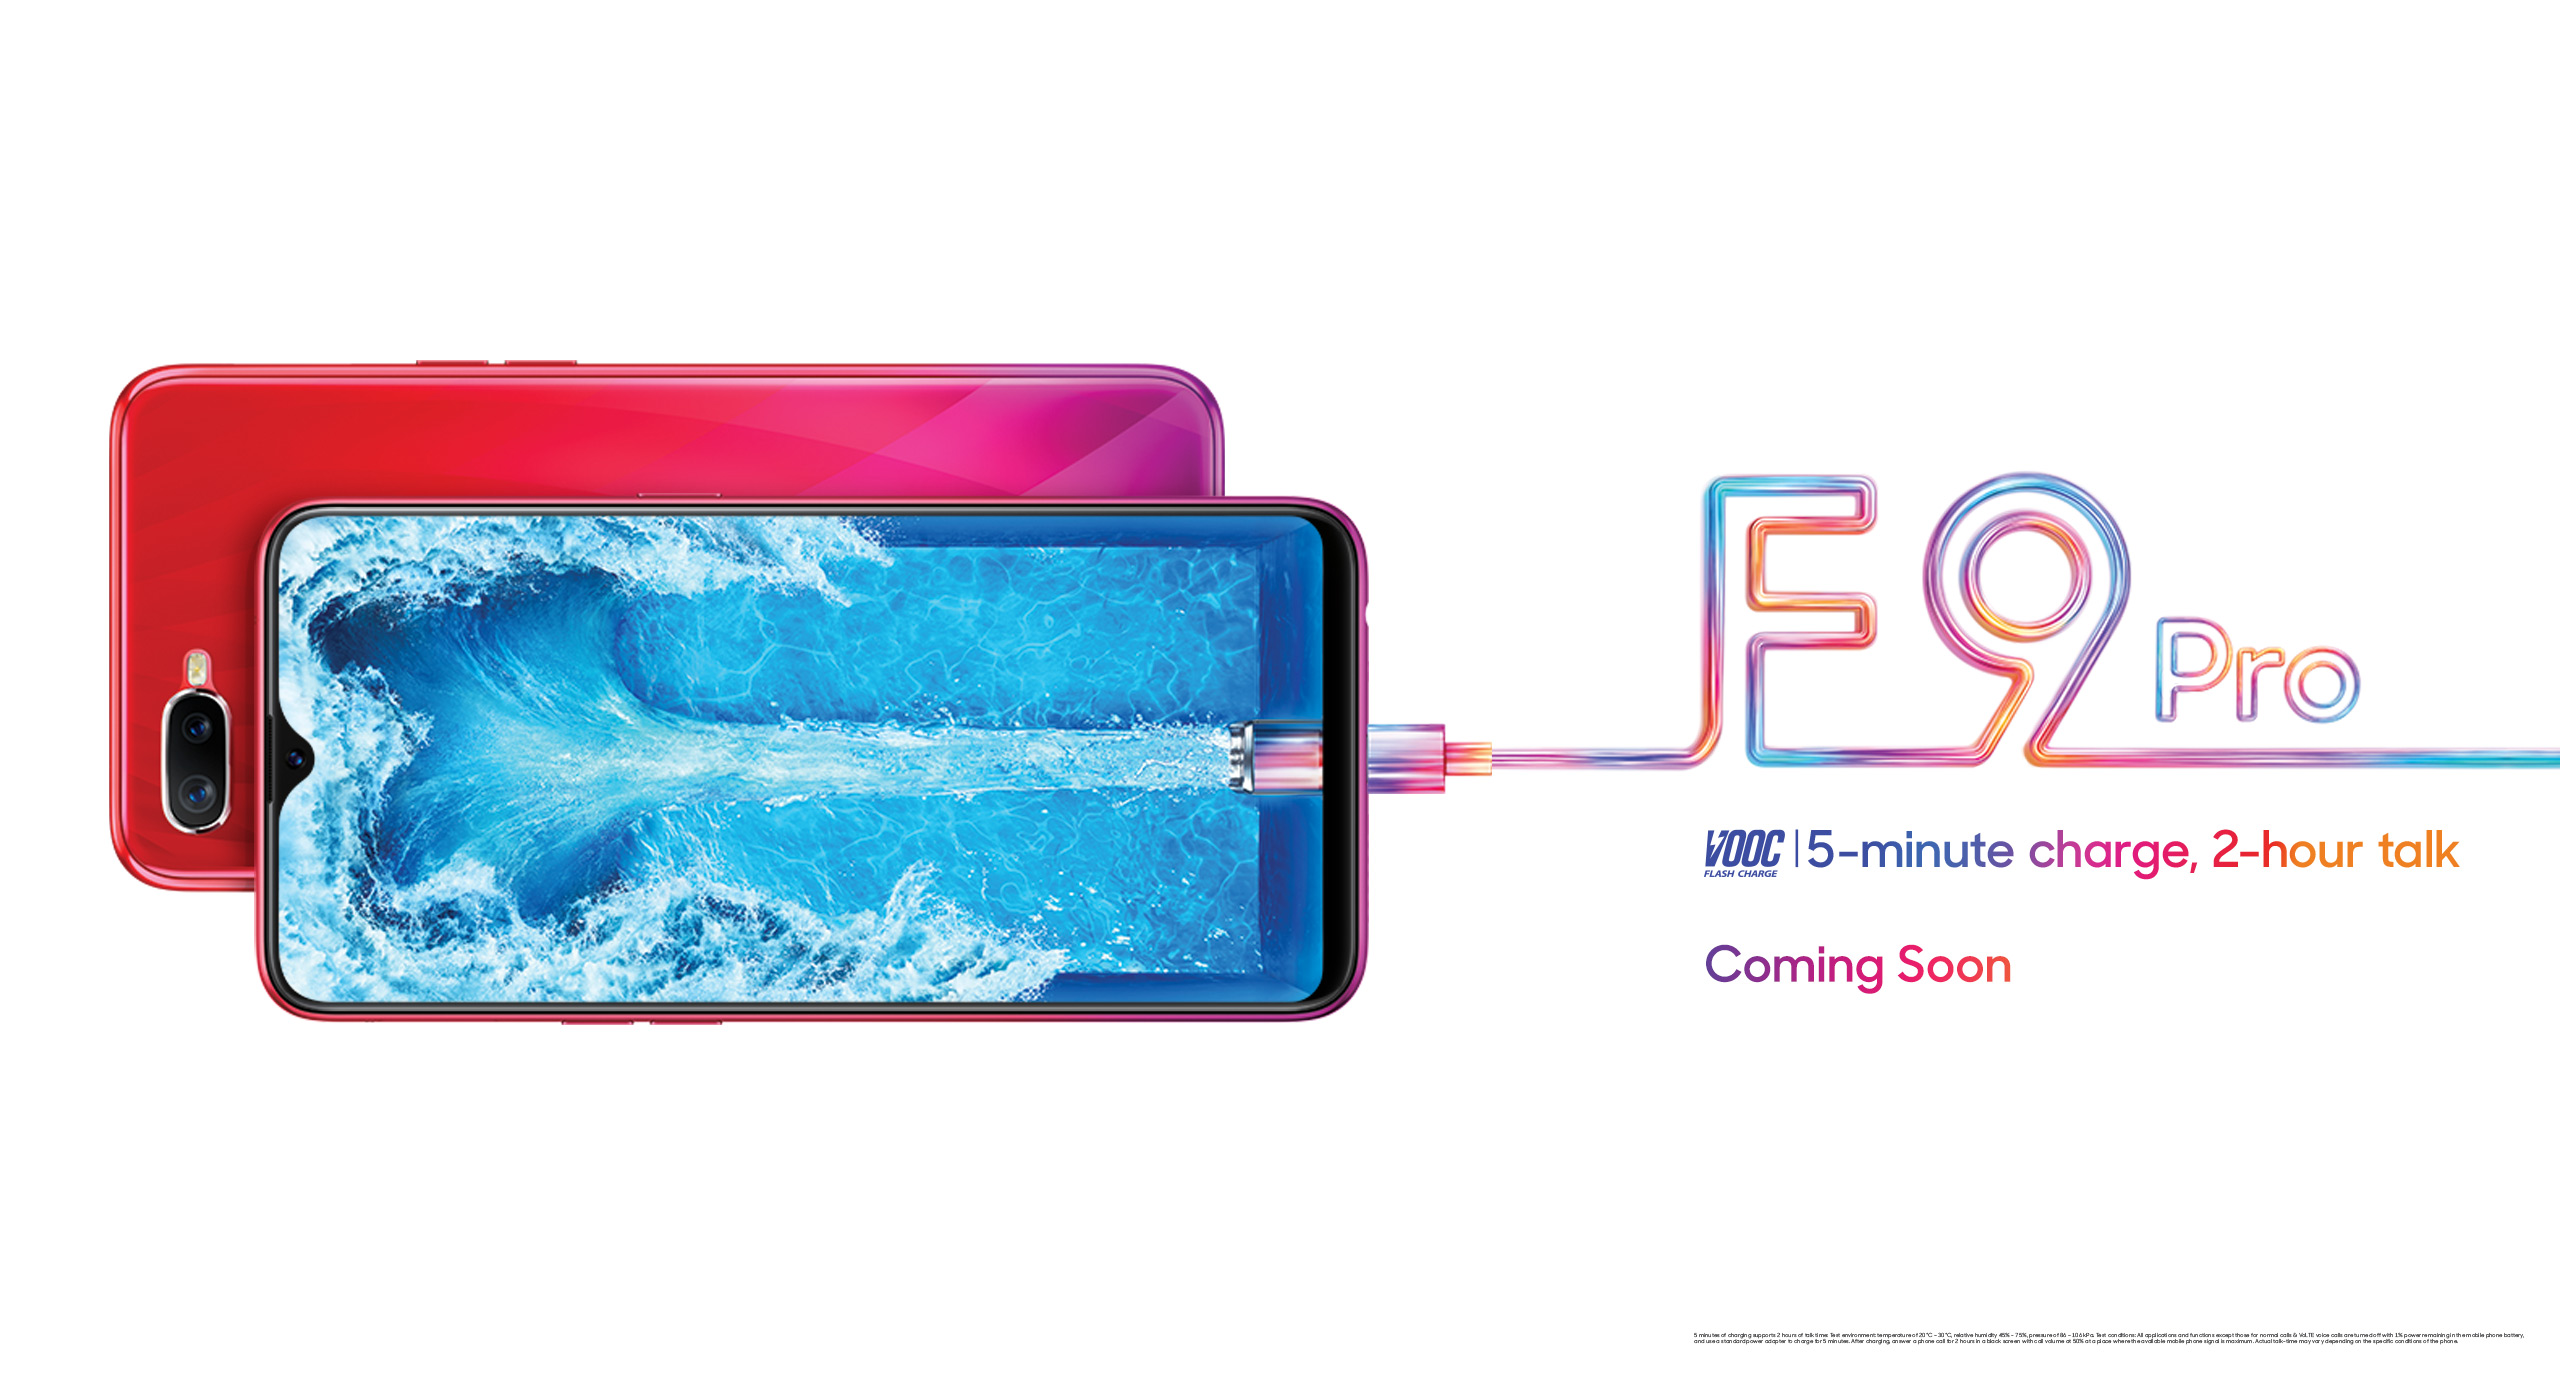 水滴屏、VOOC 快充、雙攝鏡頭、漸變色機身：OPPO F9 正式在馬來西亞發布；售價僅需 RM1,399 10